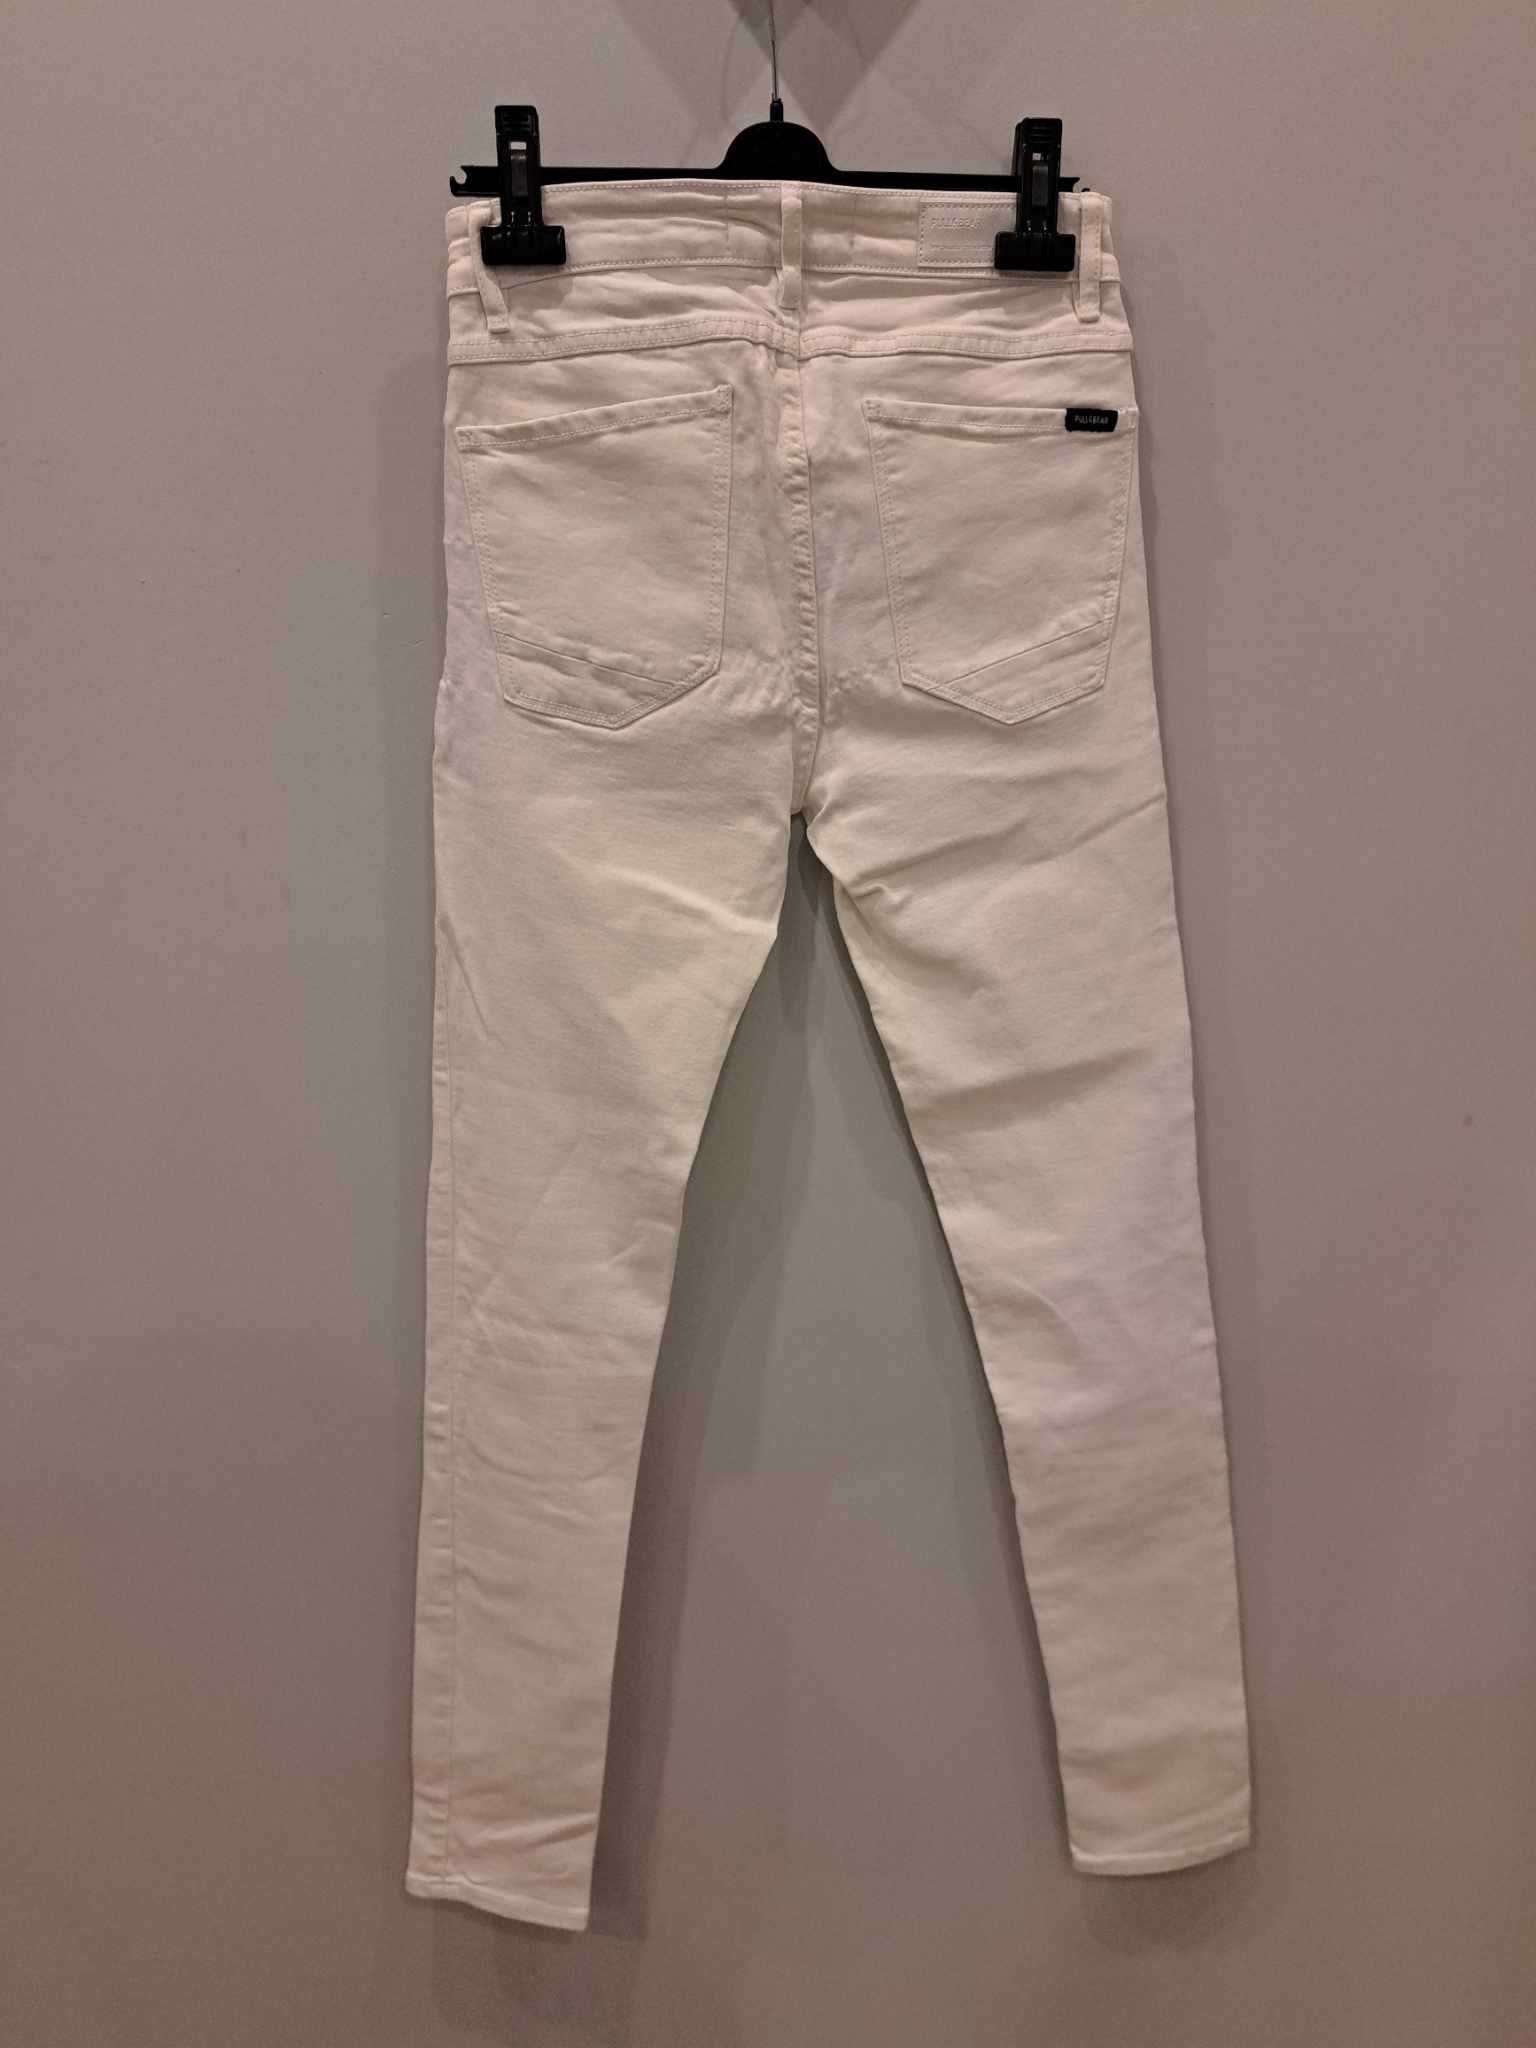 Spodnie jeans białe roz. 36, super skinny fit, wysoki stan, kieszenie